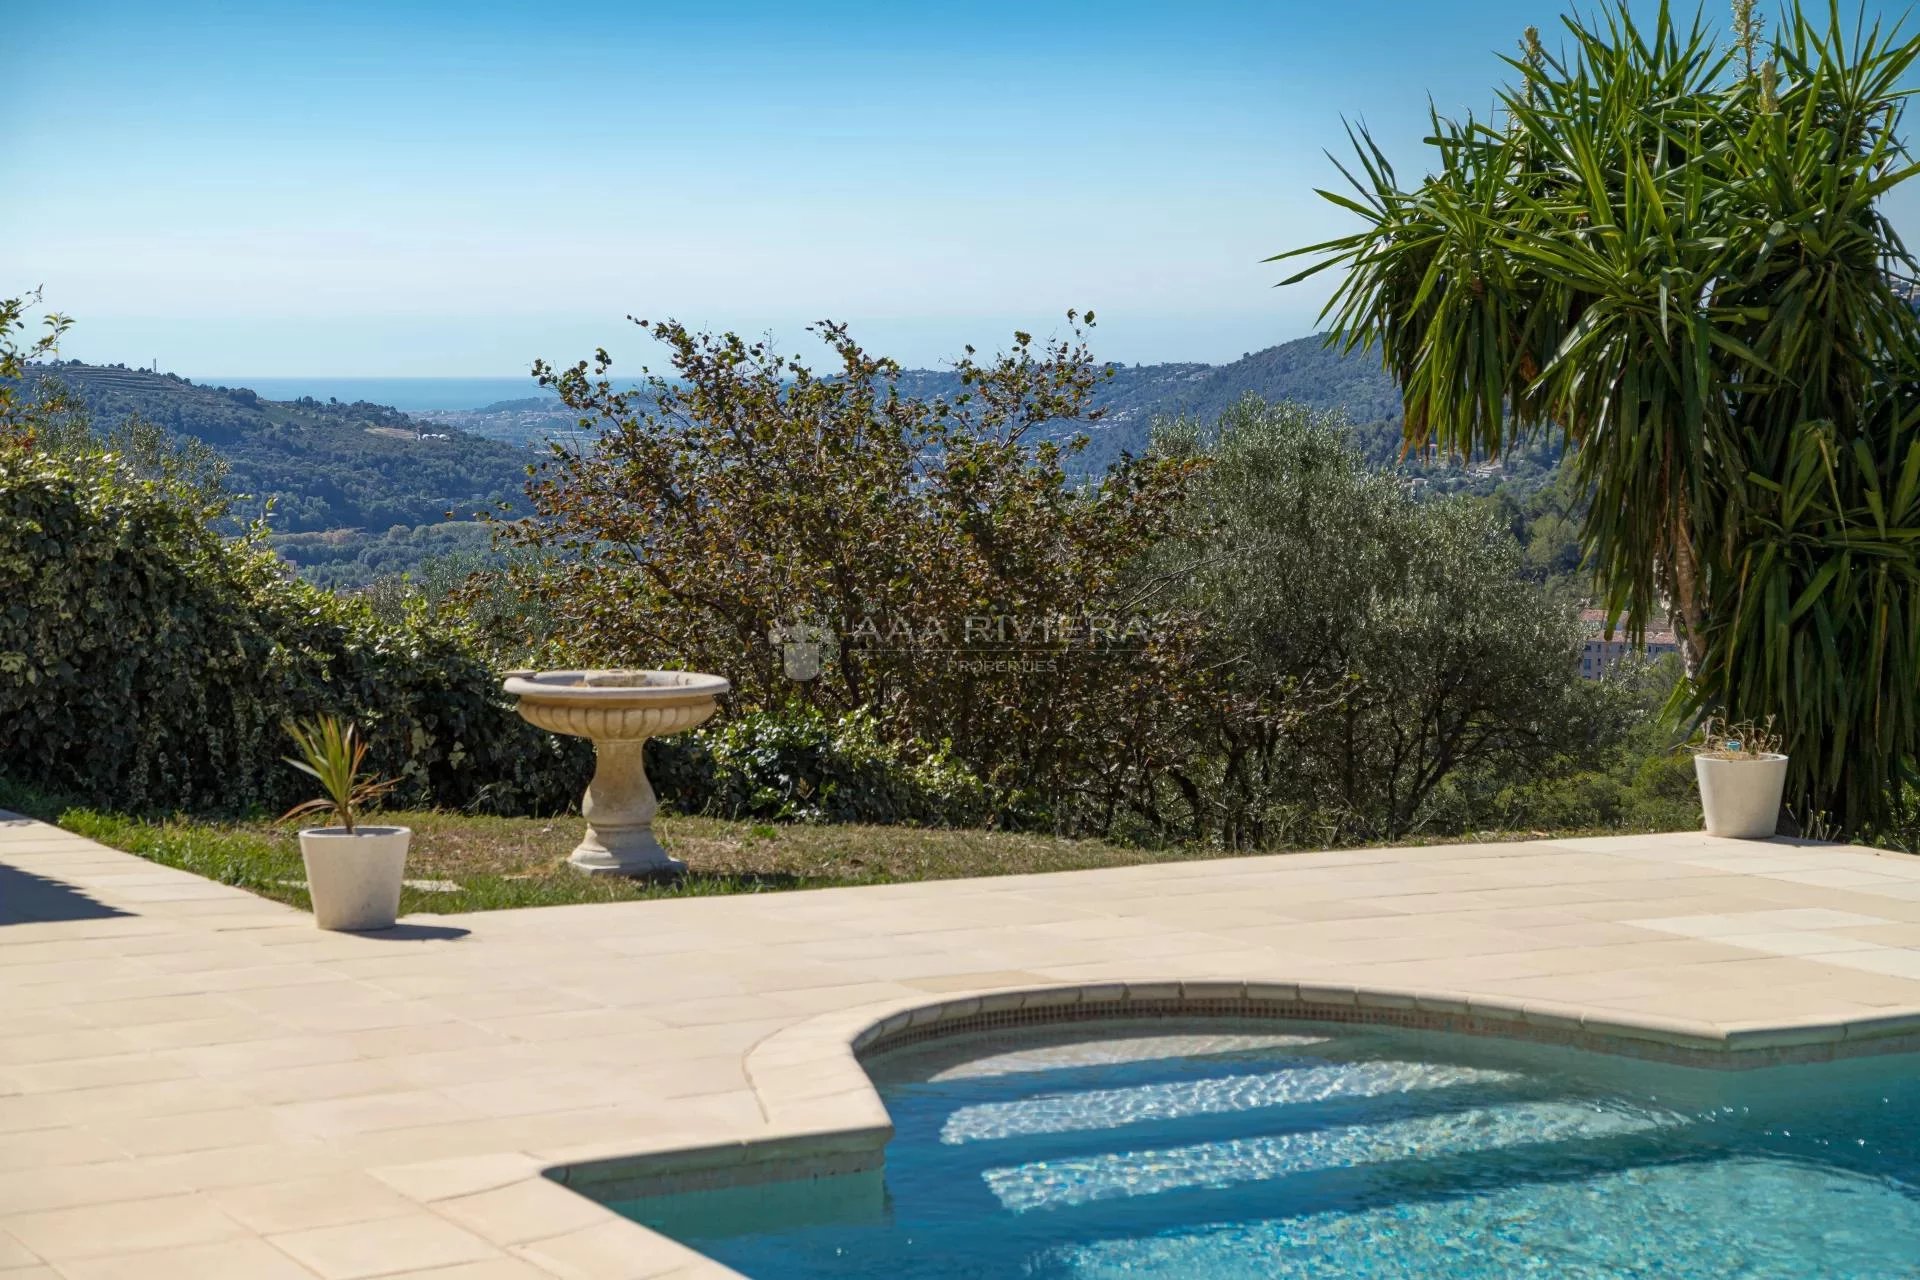 SOUS OFFRE ACCEPTEE -Carros - Villa familiale 5 chambres au calme avec vue panoramique, piscine et studio indépendant